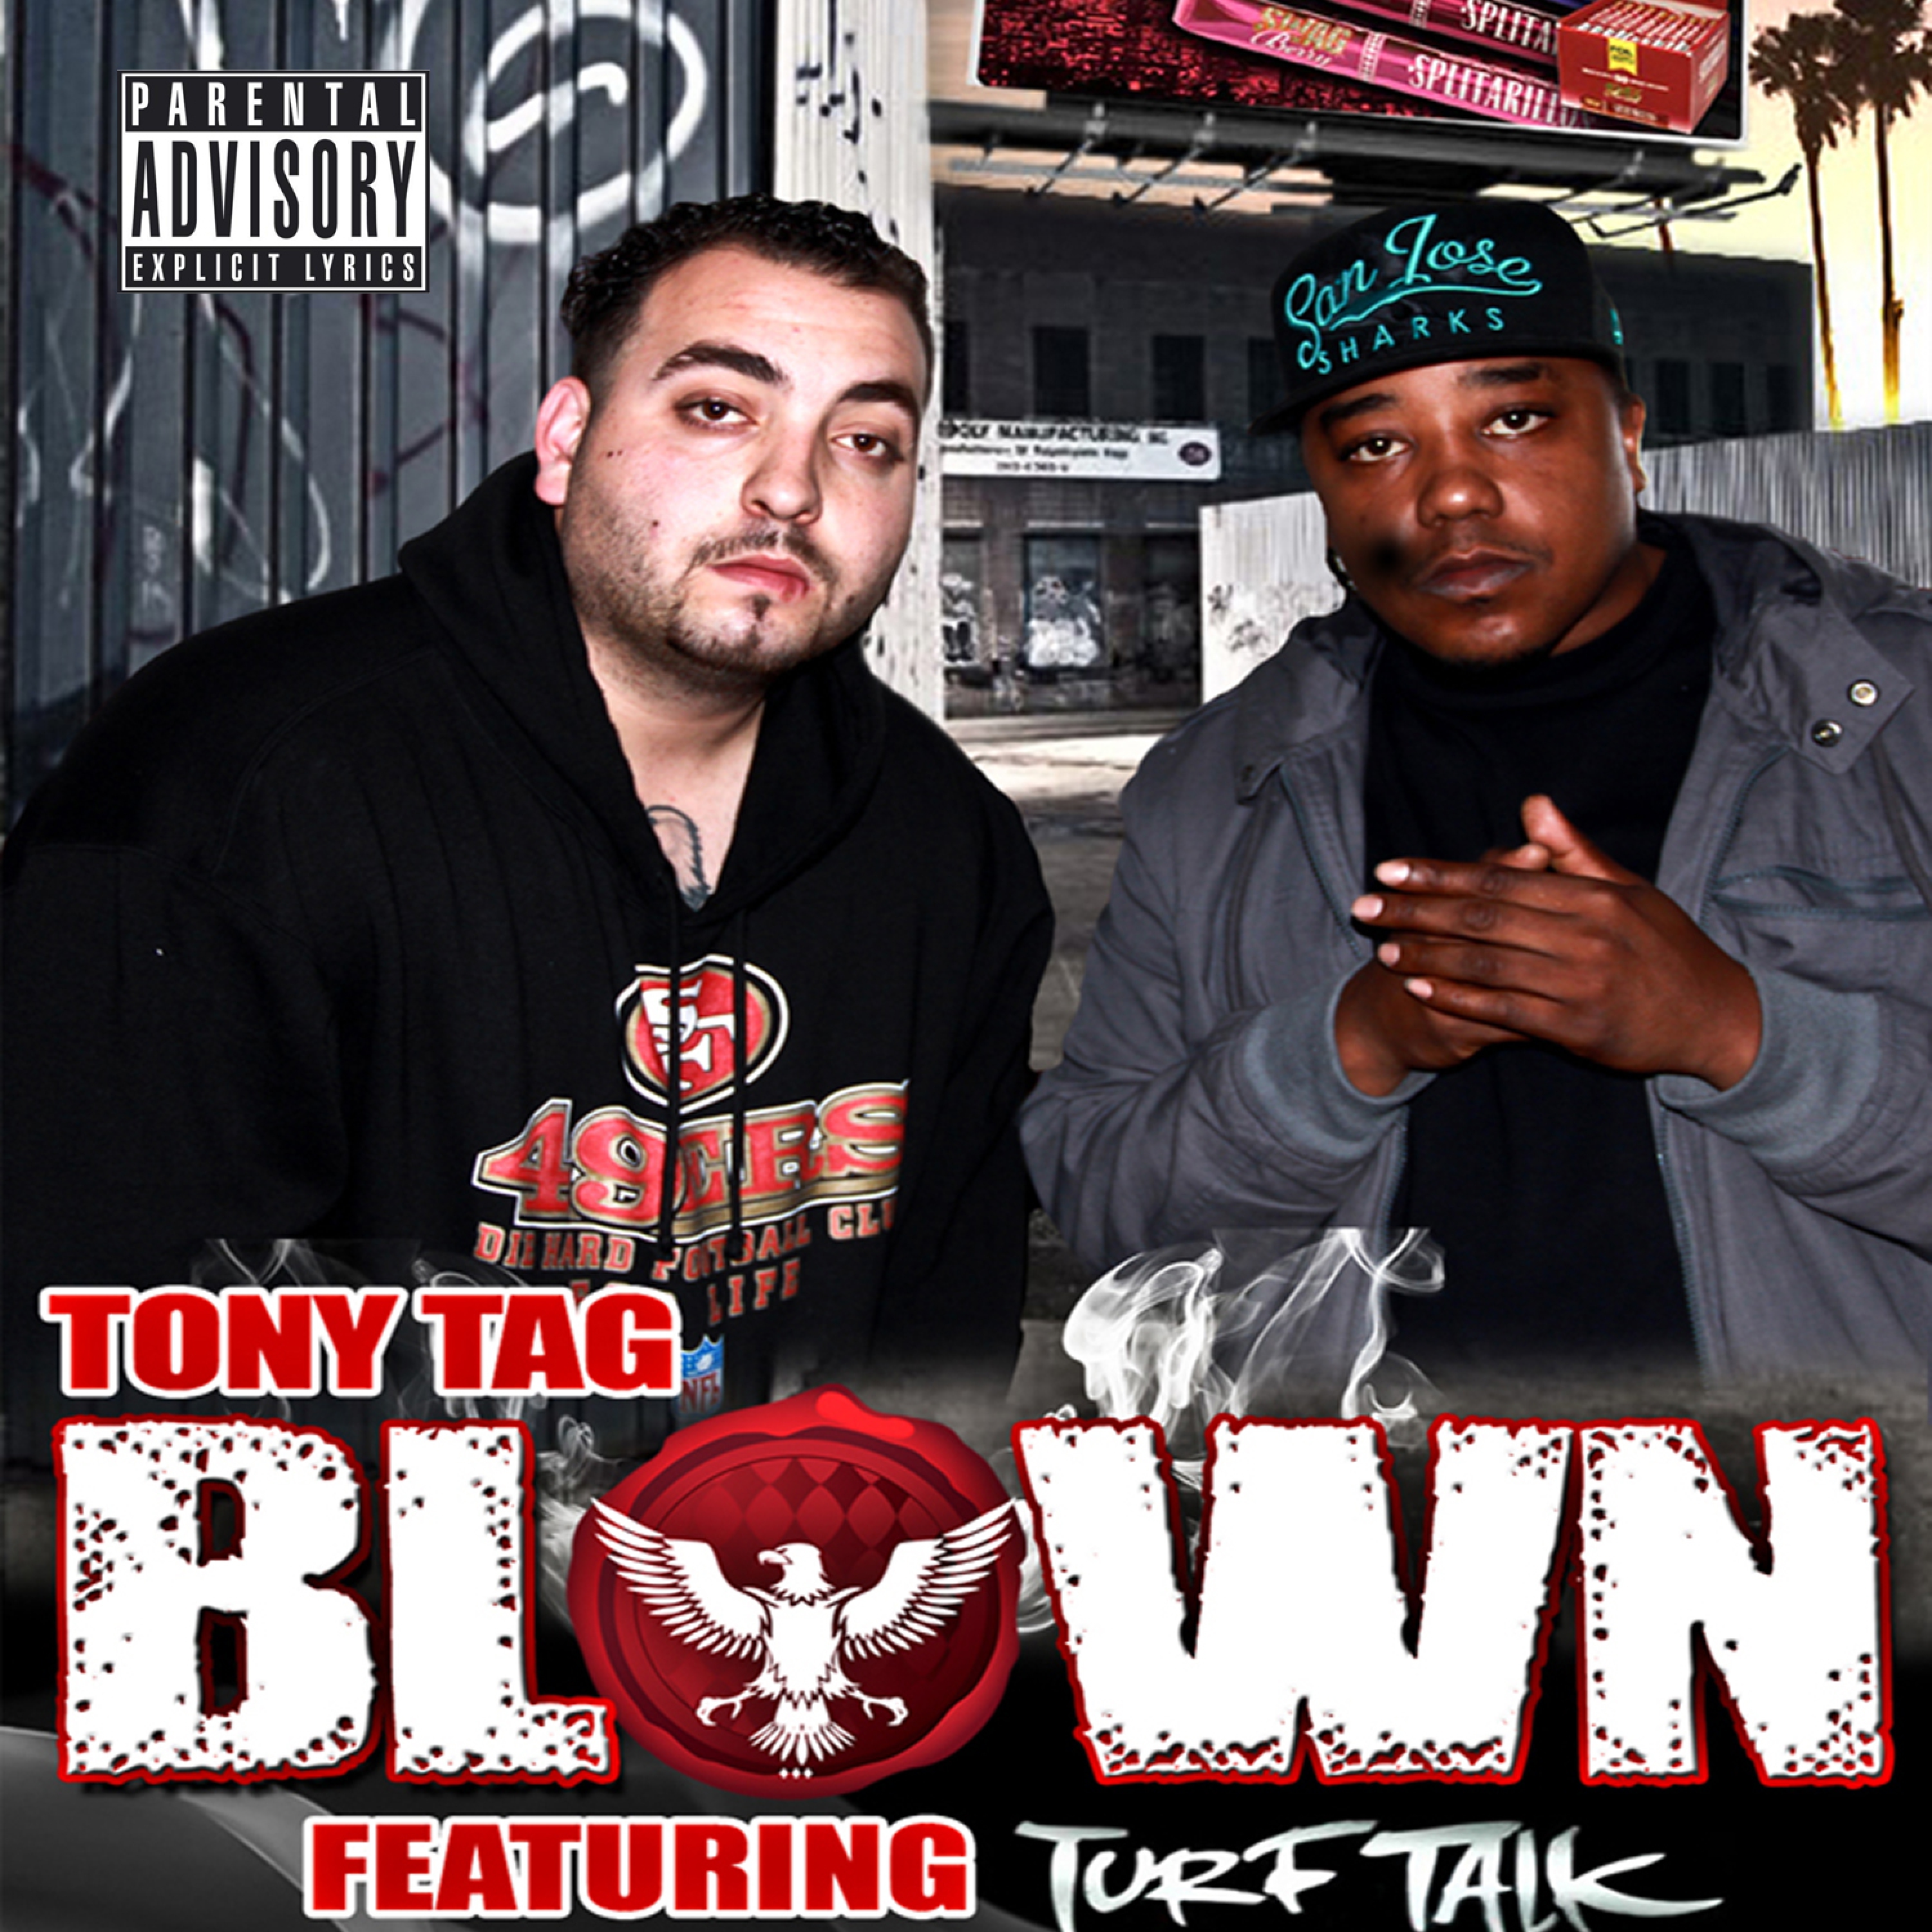 Blown (feat. Turf Talk)